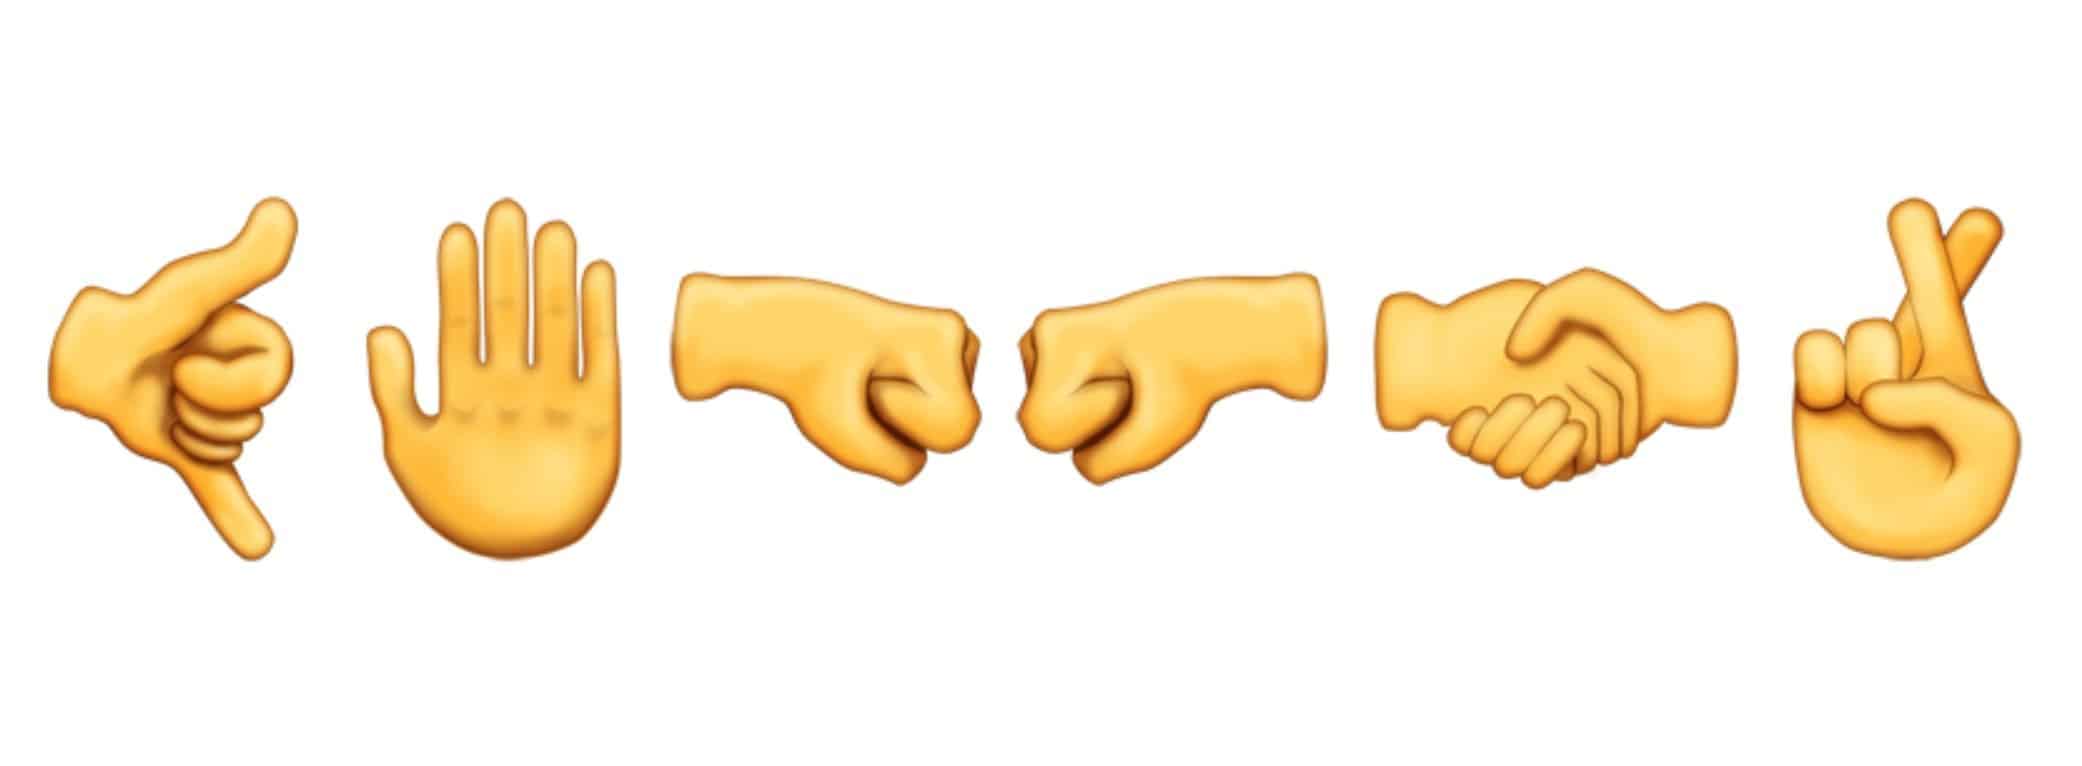 5 - emojis 2016